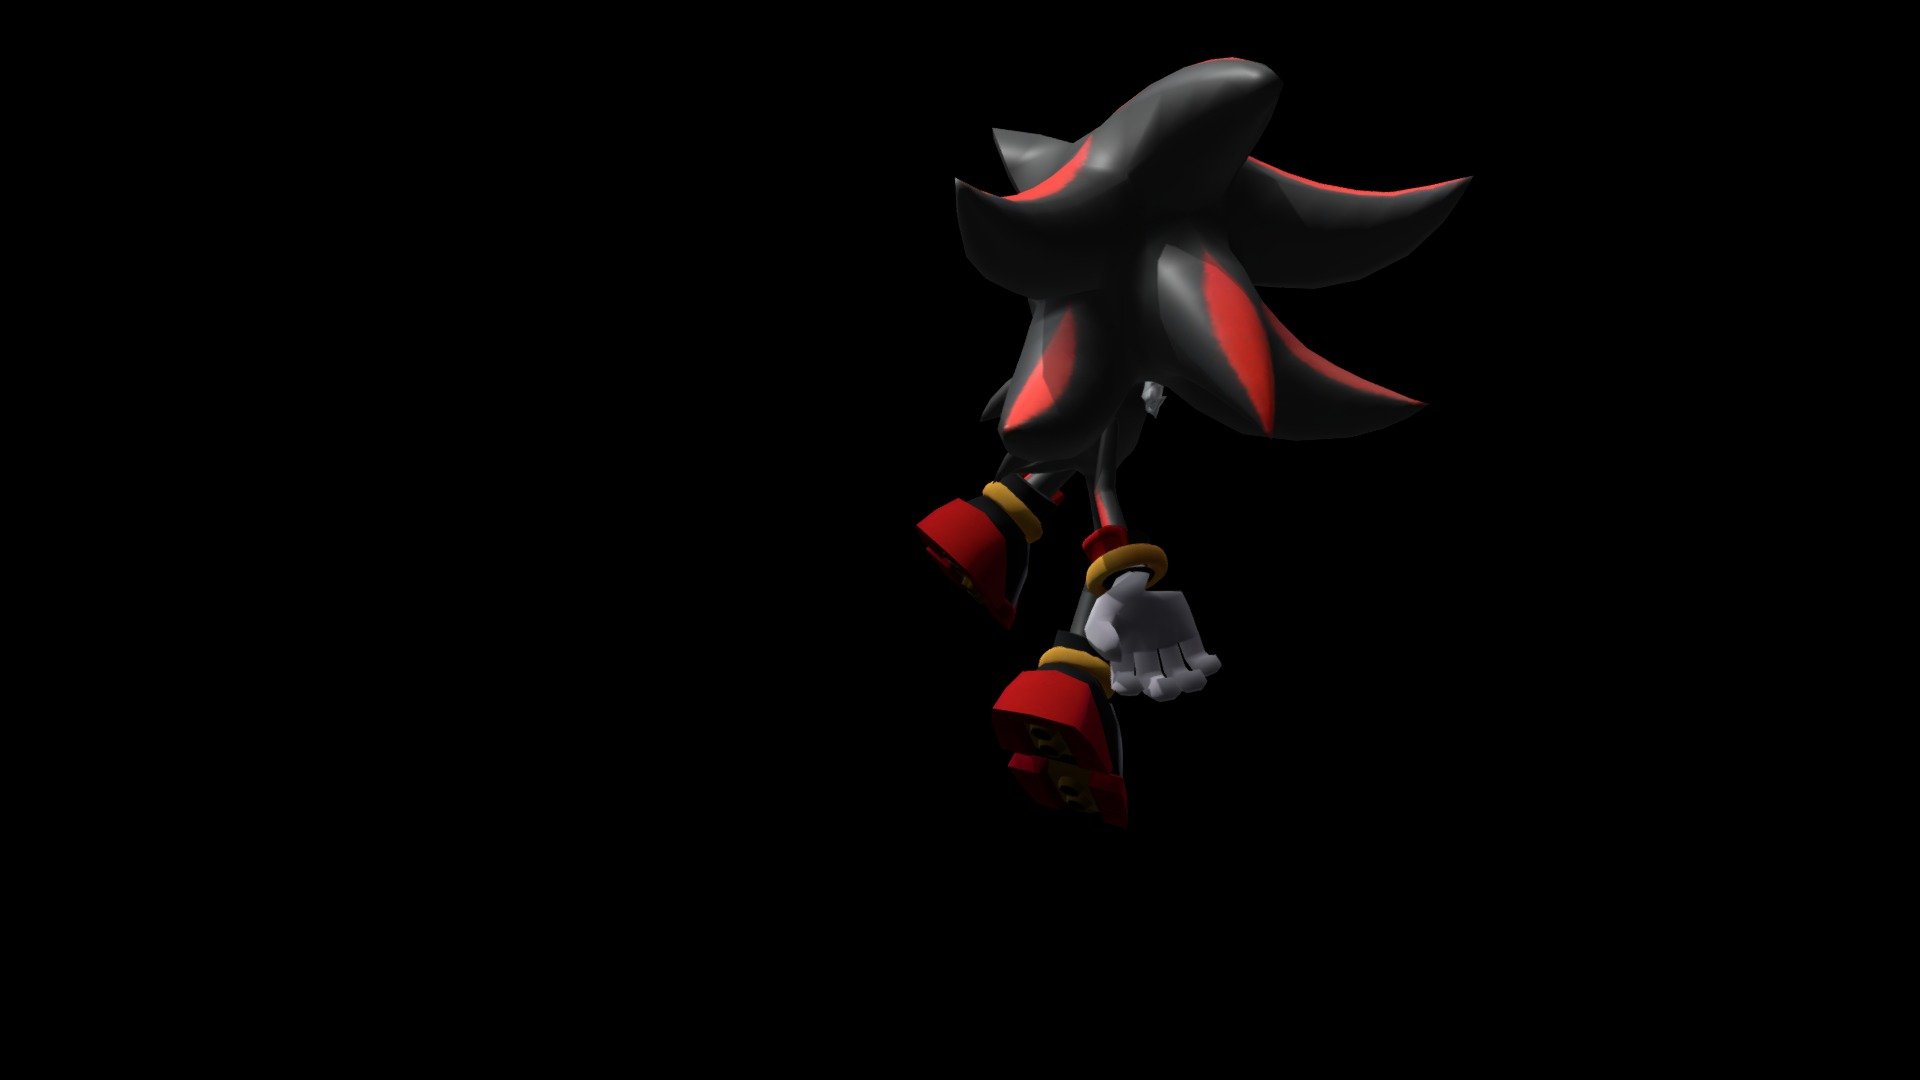 Shadow (Movie Design) - 3D model by Sonic the Hedgehog Fan # 9,945,677  (@sonicmaniafan994878) [0529774]